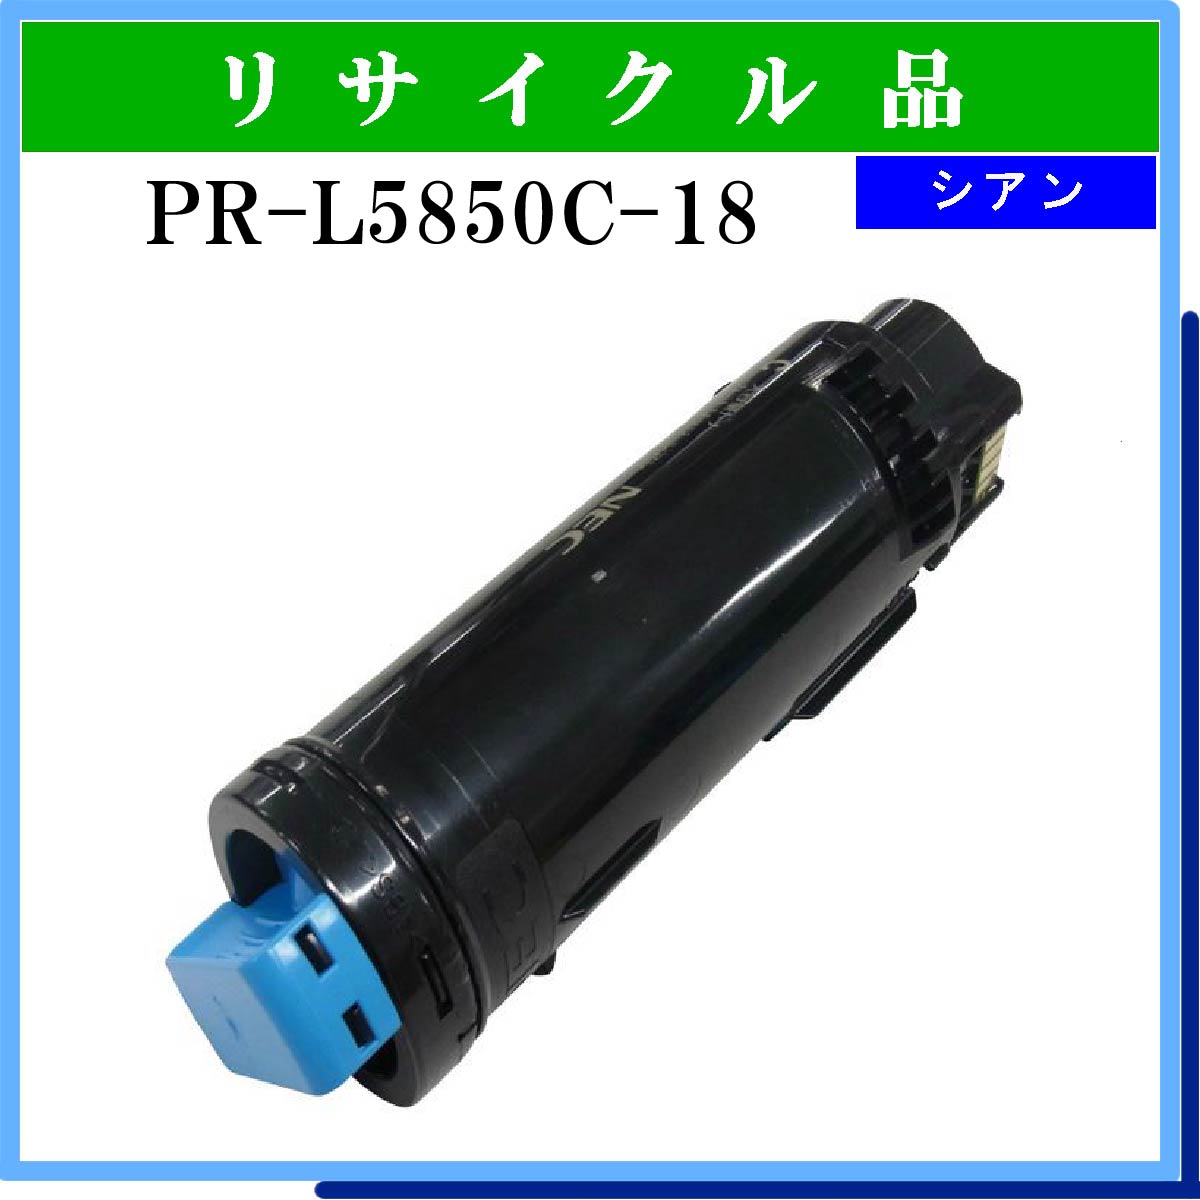 PR-L5850C-18